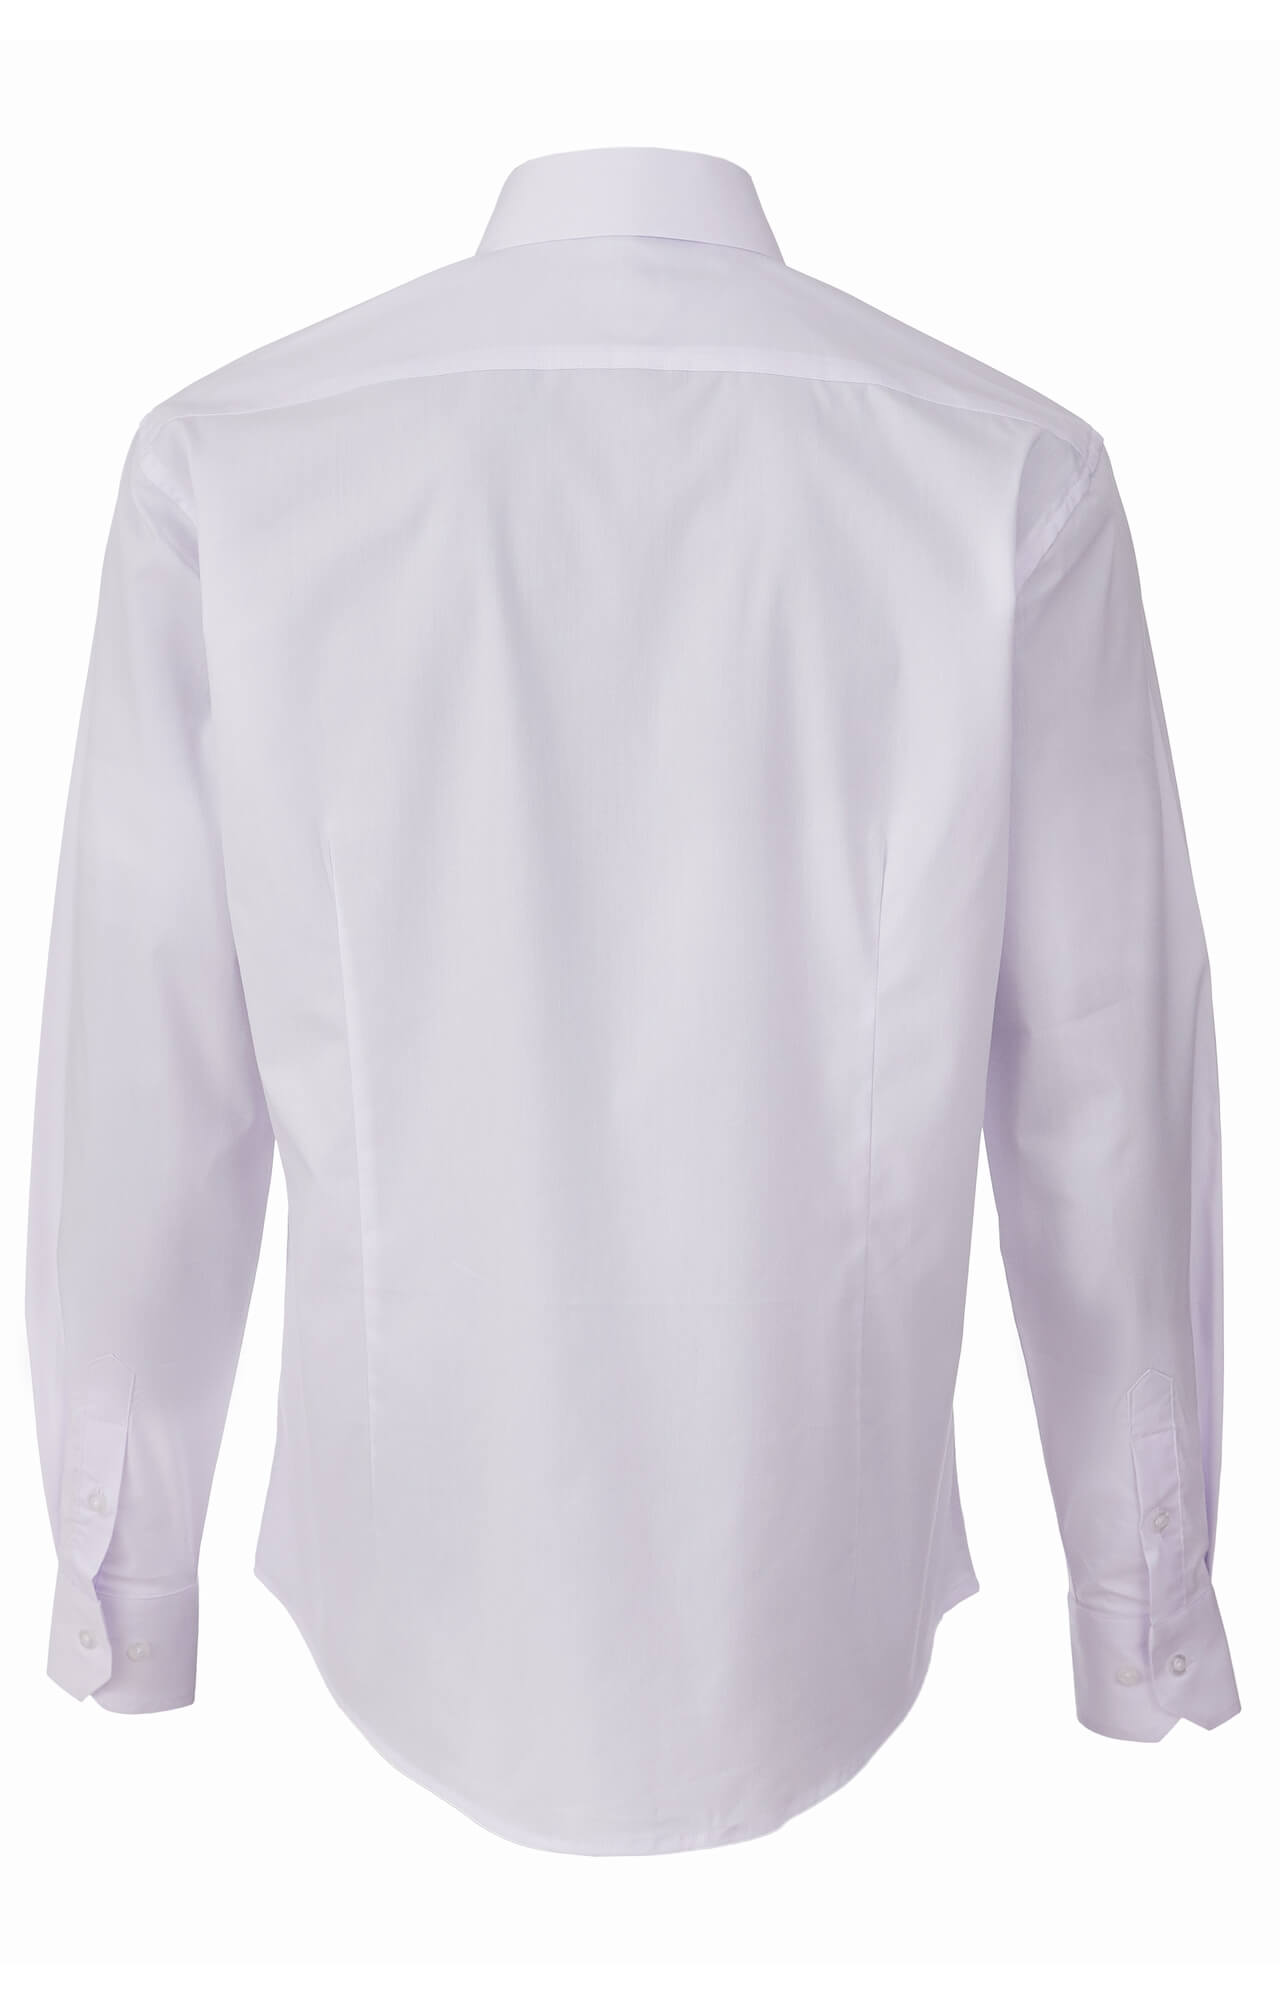 Рубашка мужская "El-Risto" white (белая)